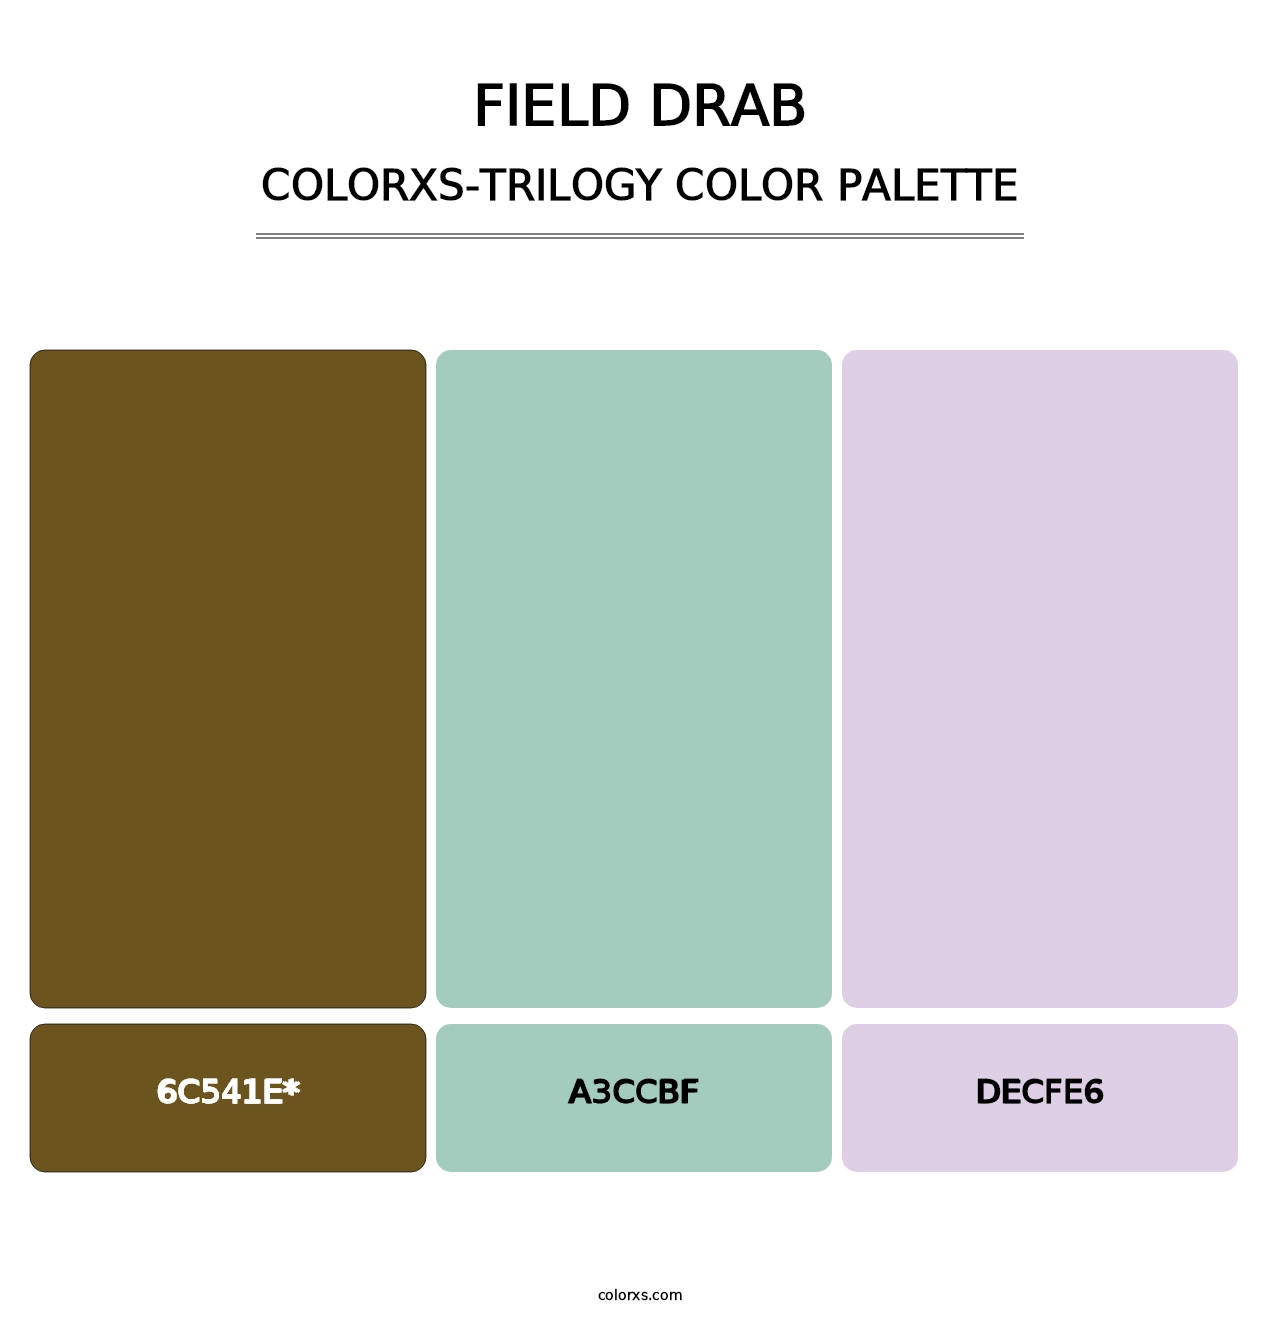 Field Drab - Colorxs Trilogy Palette